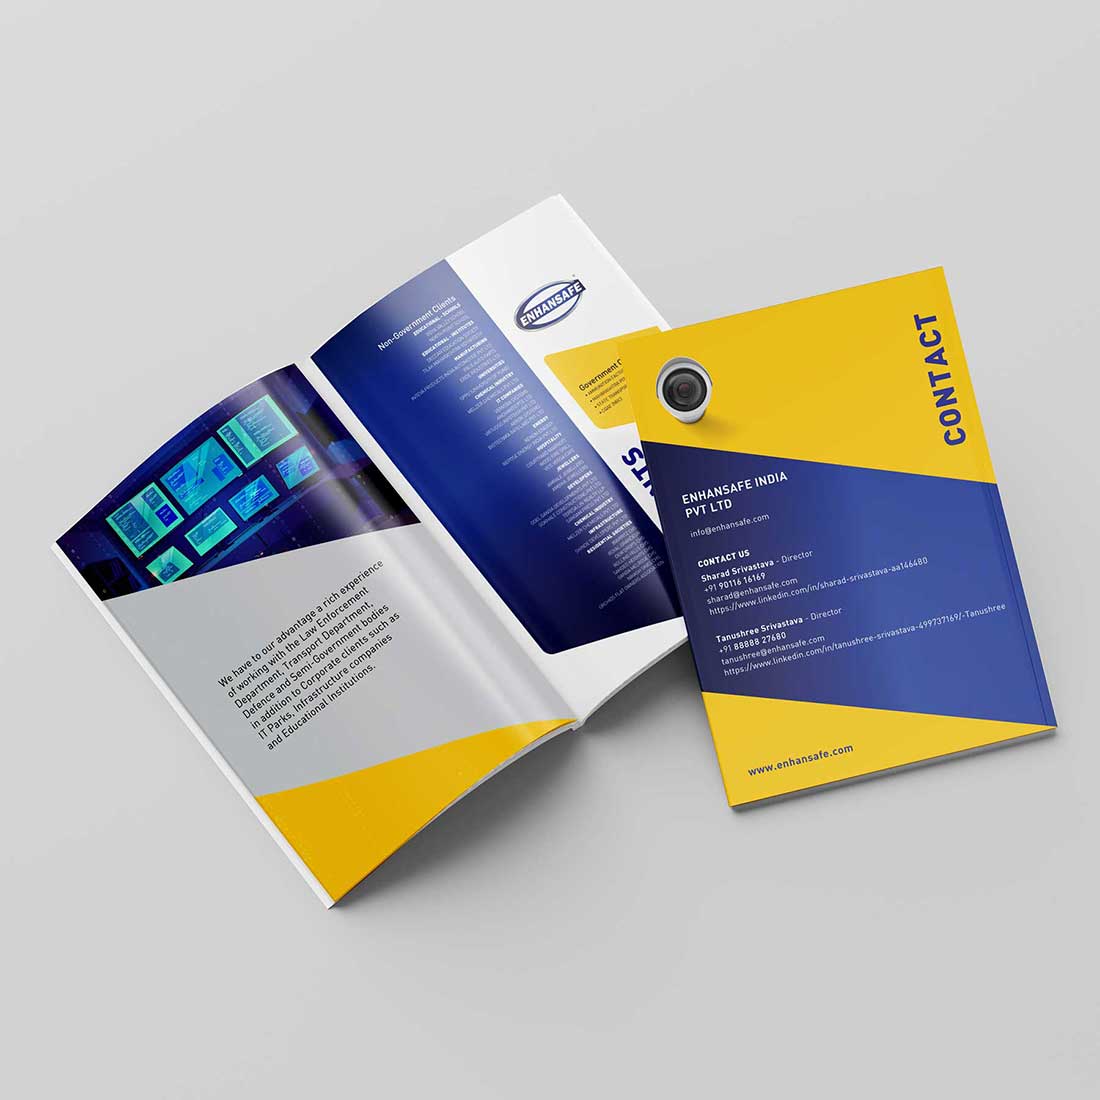 Brochure design for Enhansafe